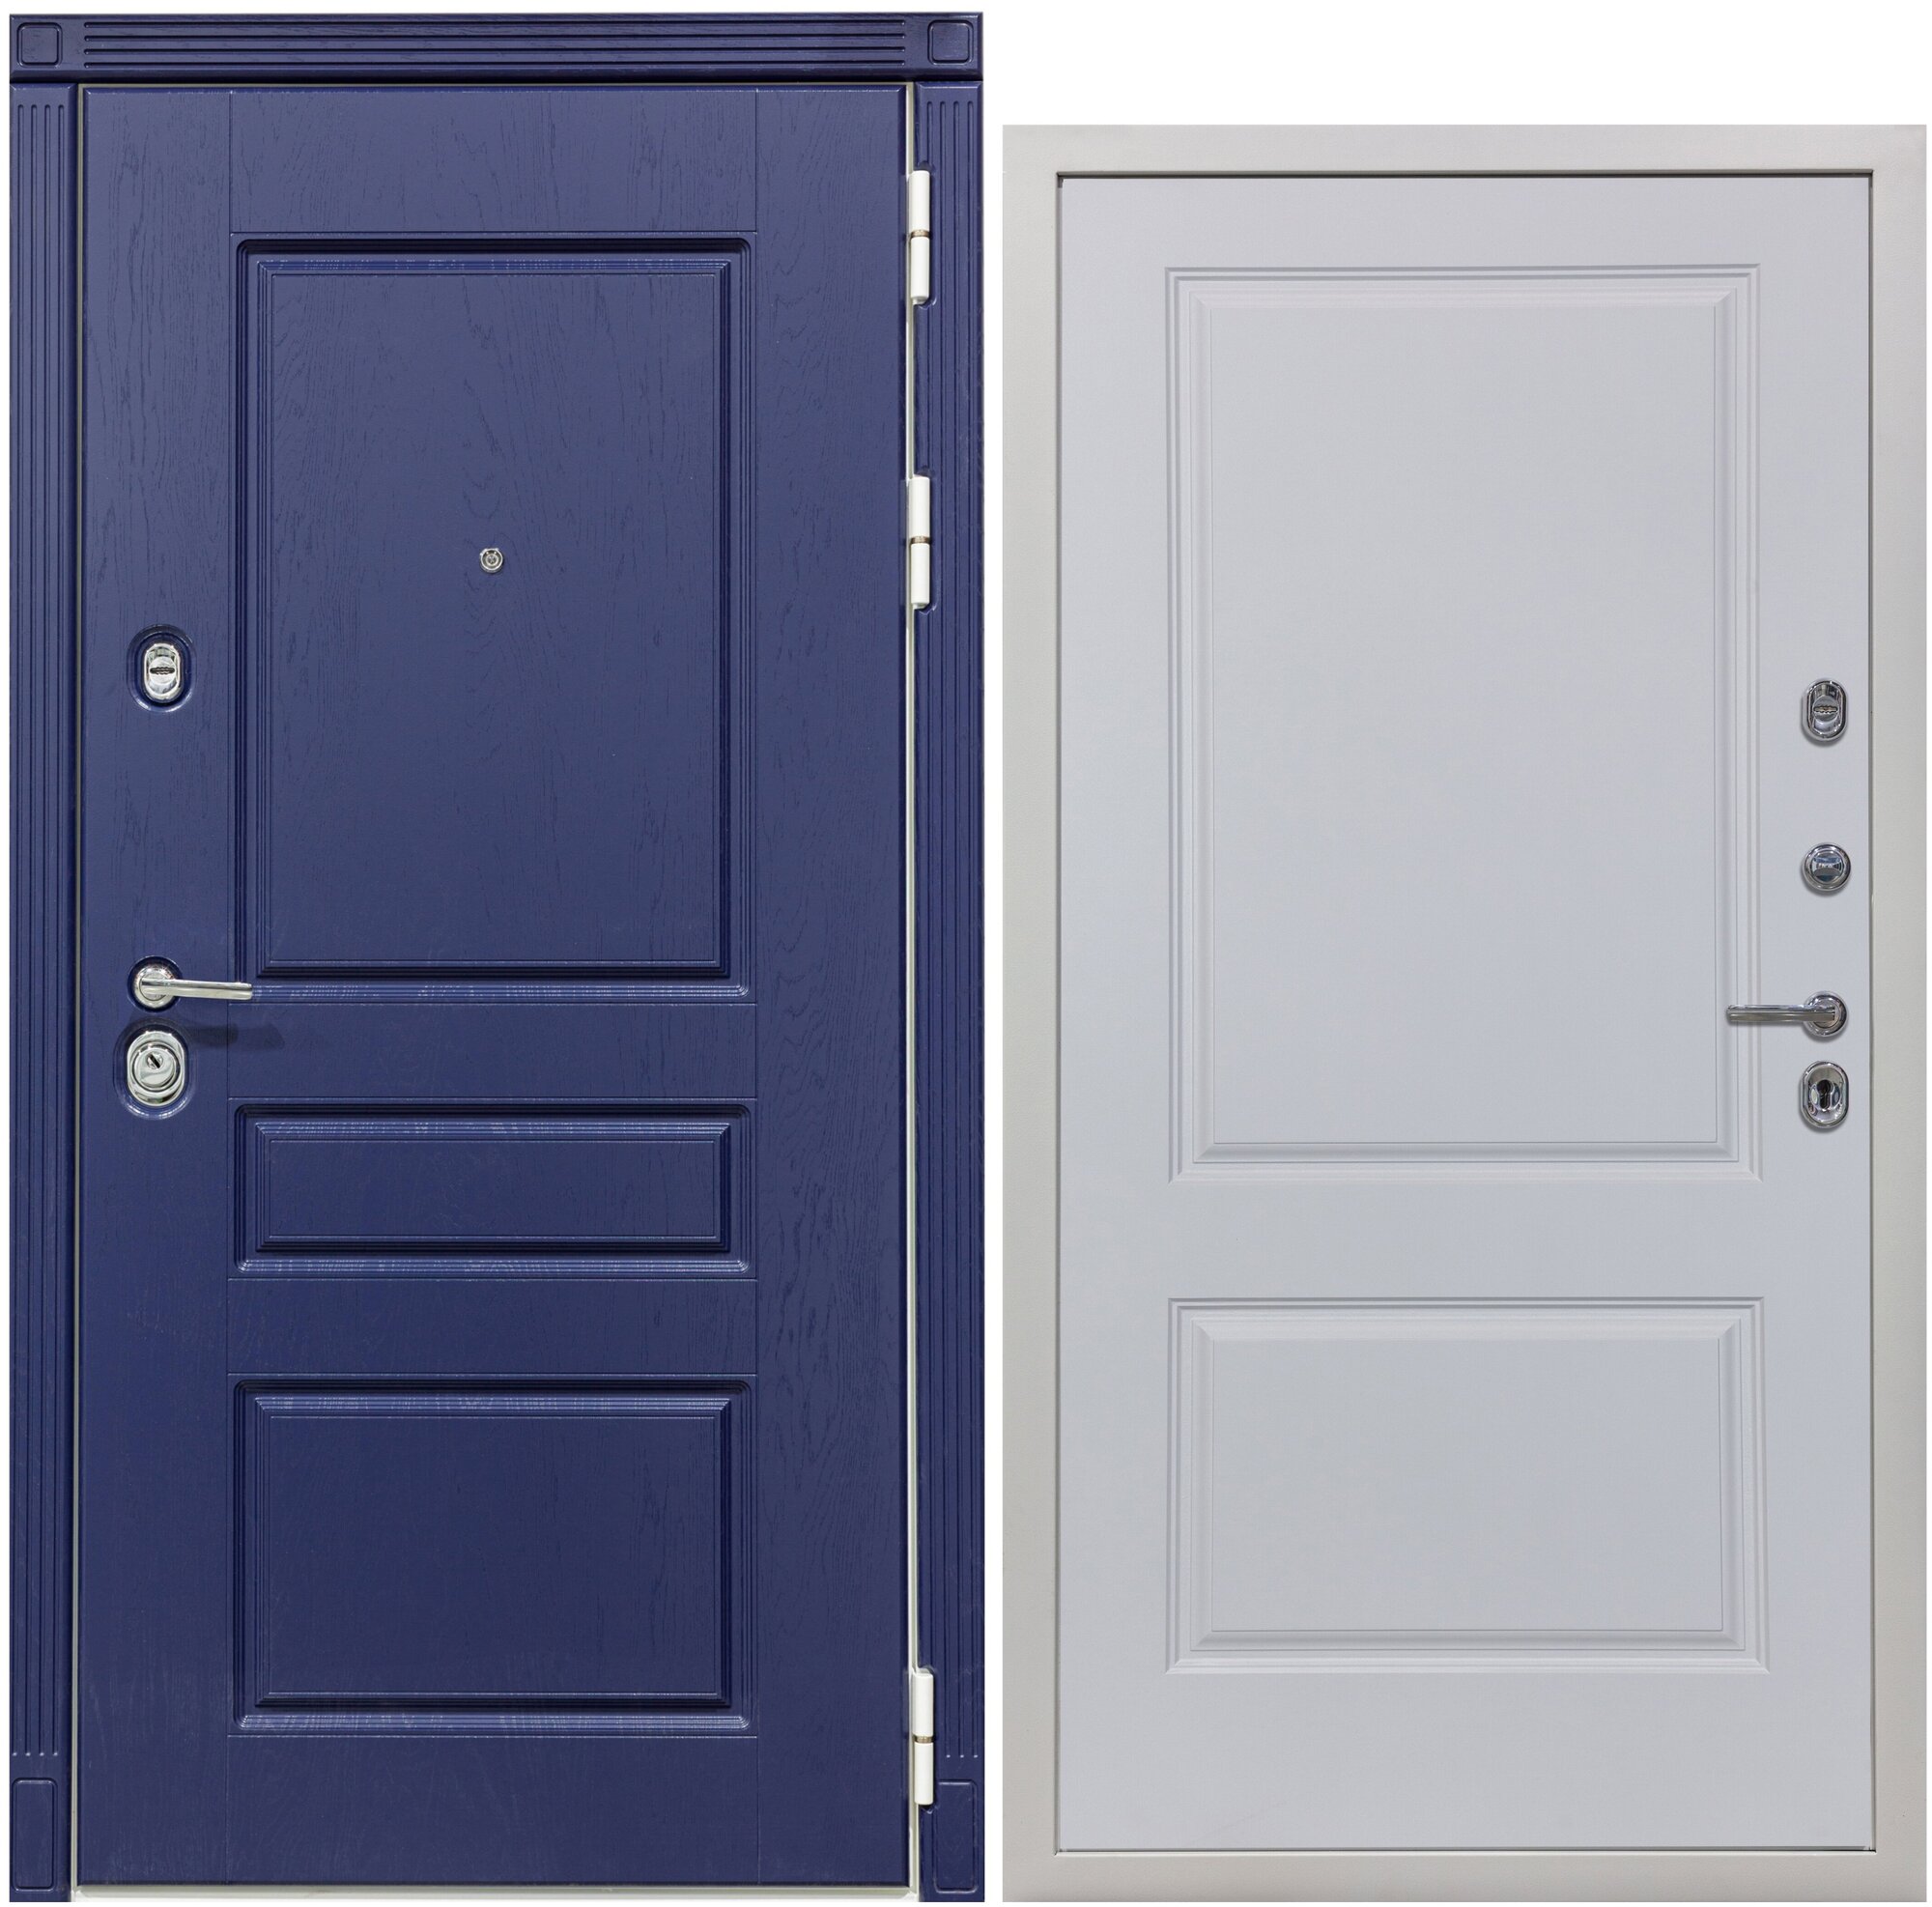 Дверь входная металлическая DIVA 45 2050x860 Правая Роял синий - Д7 Белый Софт, тепло-шумоизоляция, антикоррозийная защита для квартиры